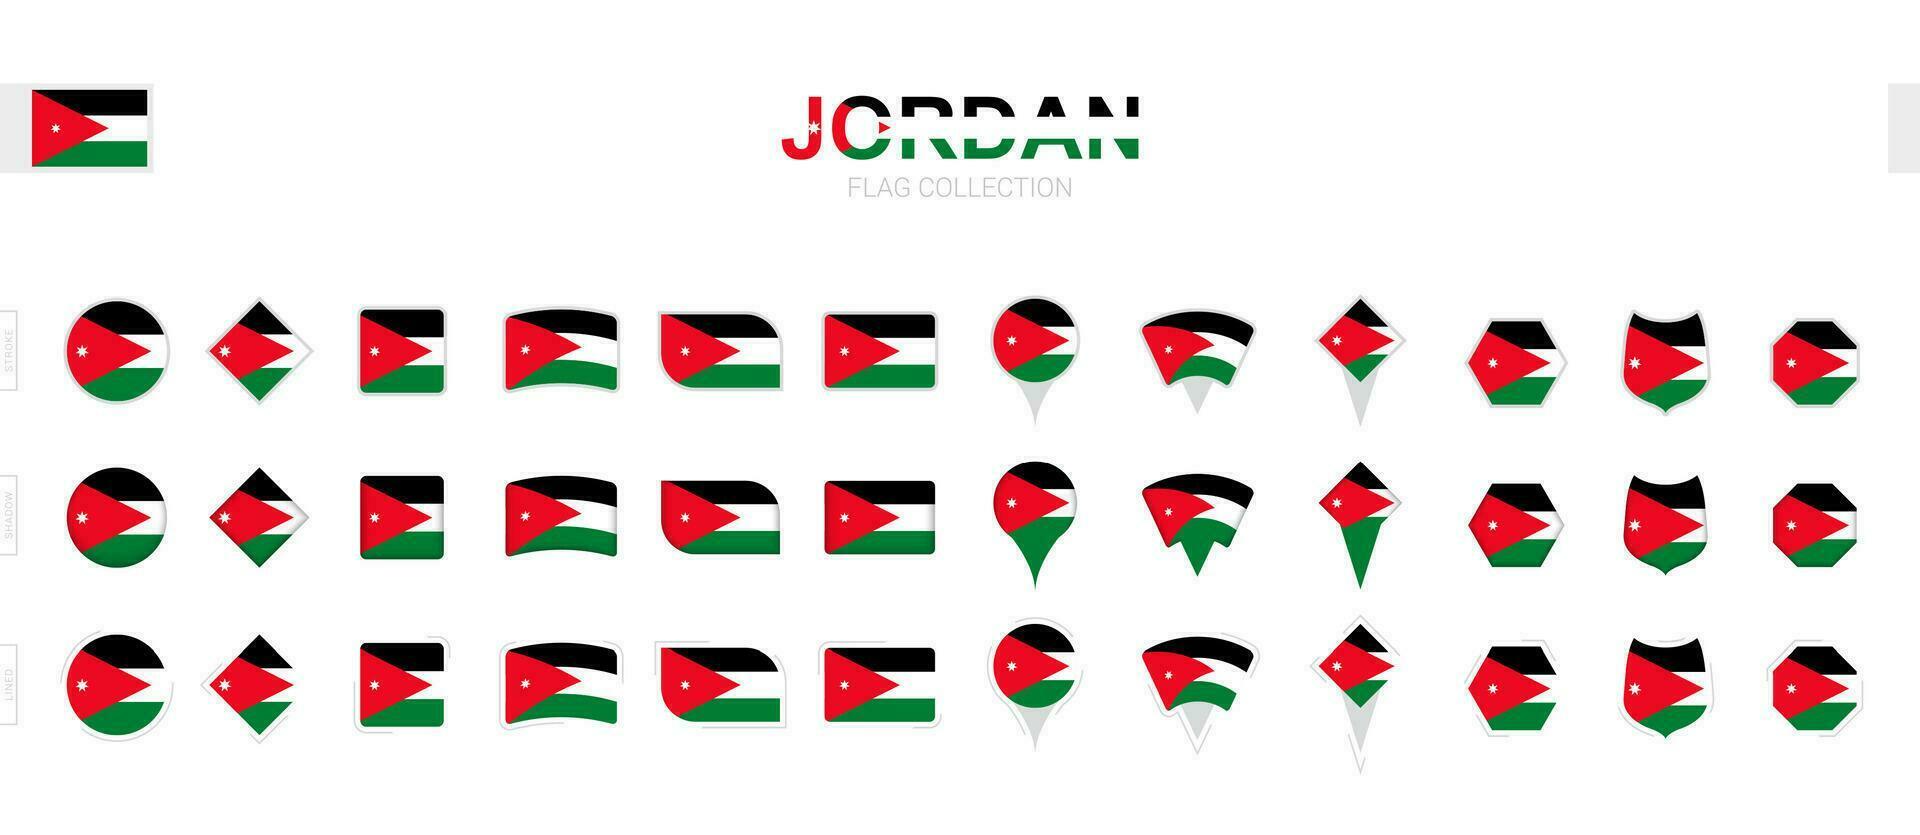 grand collection de Jordan drapeaux de divers formes et effets. vecteur